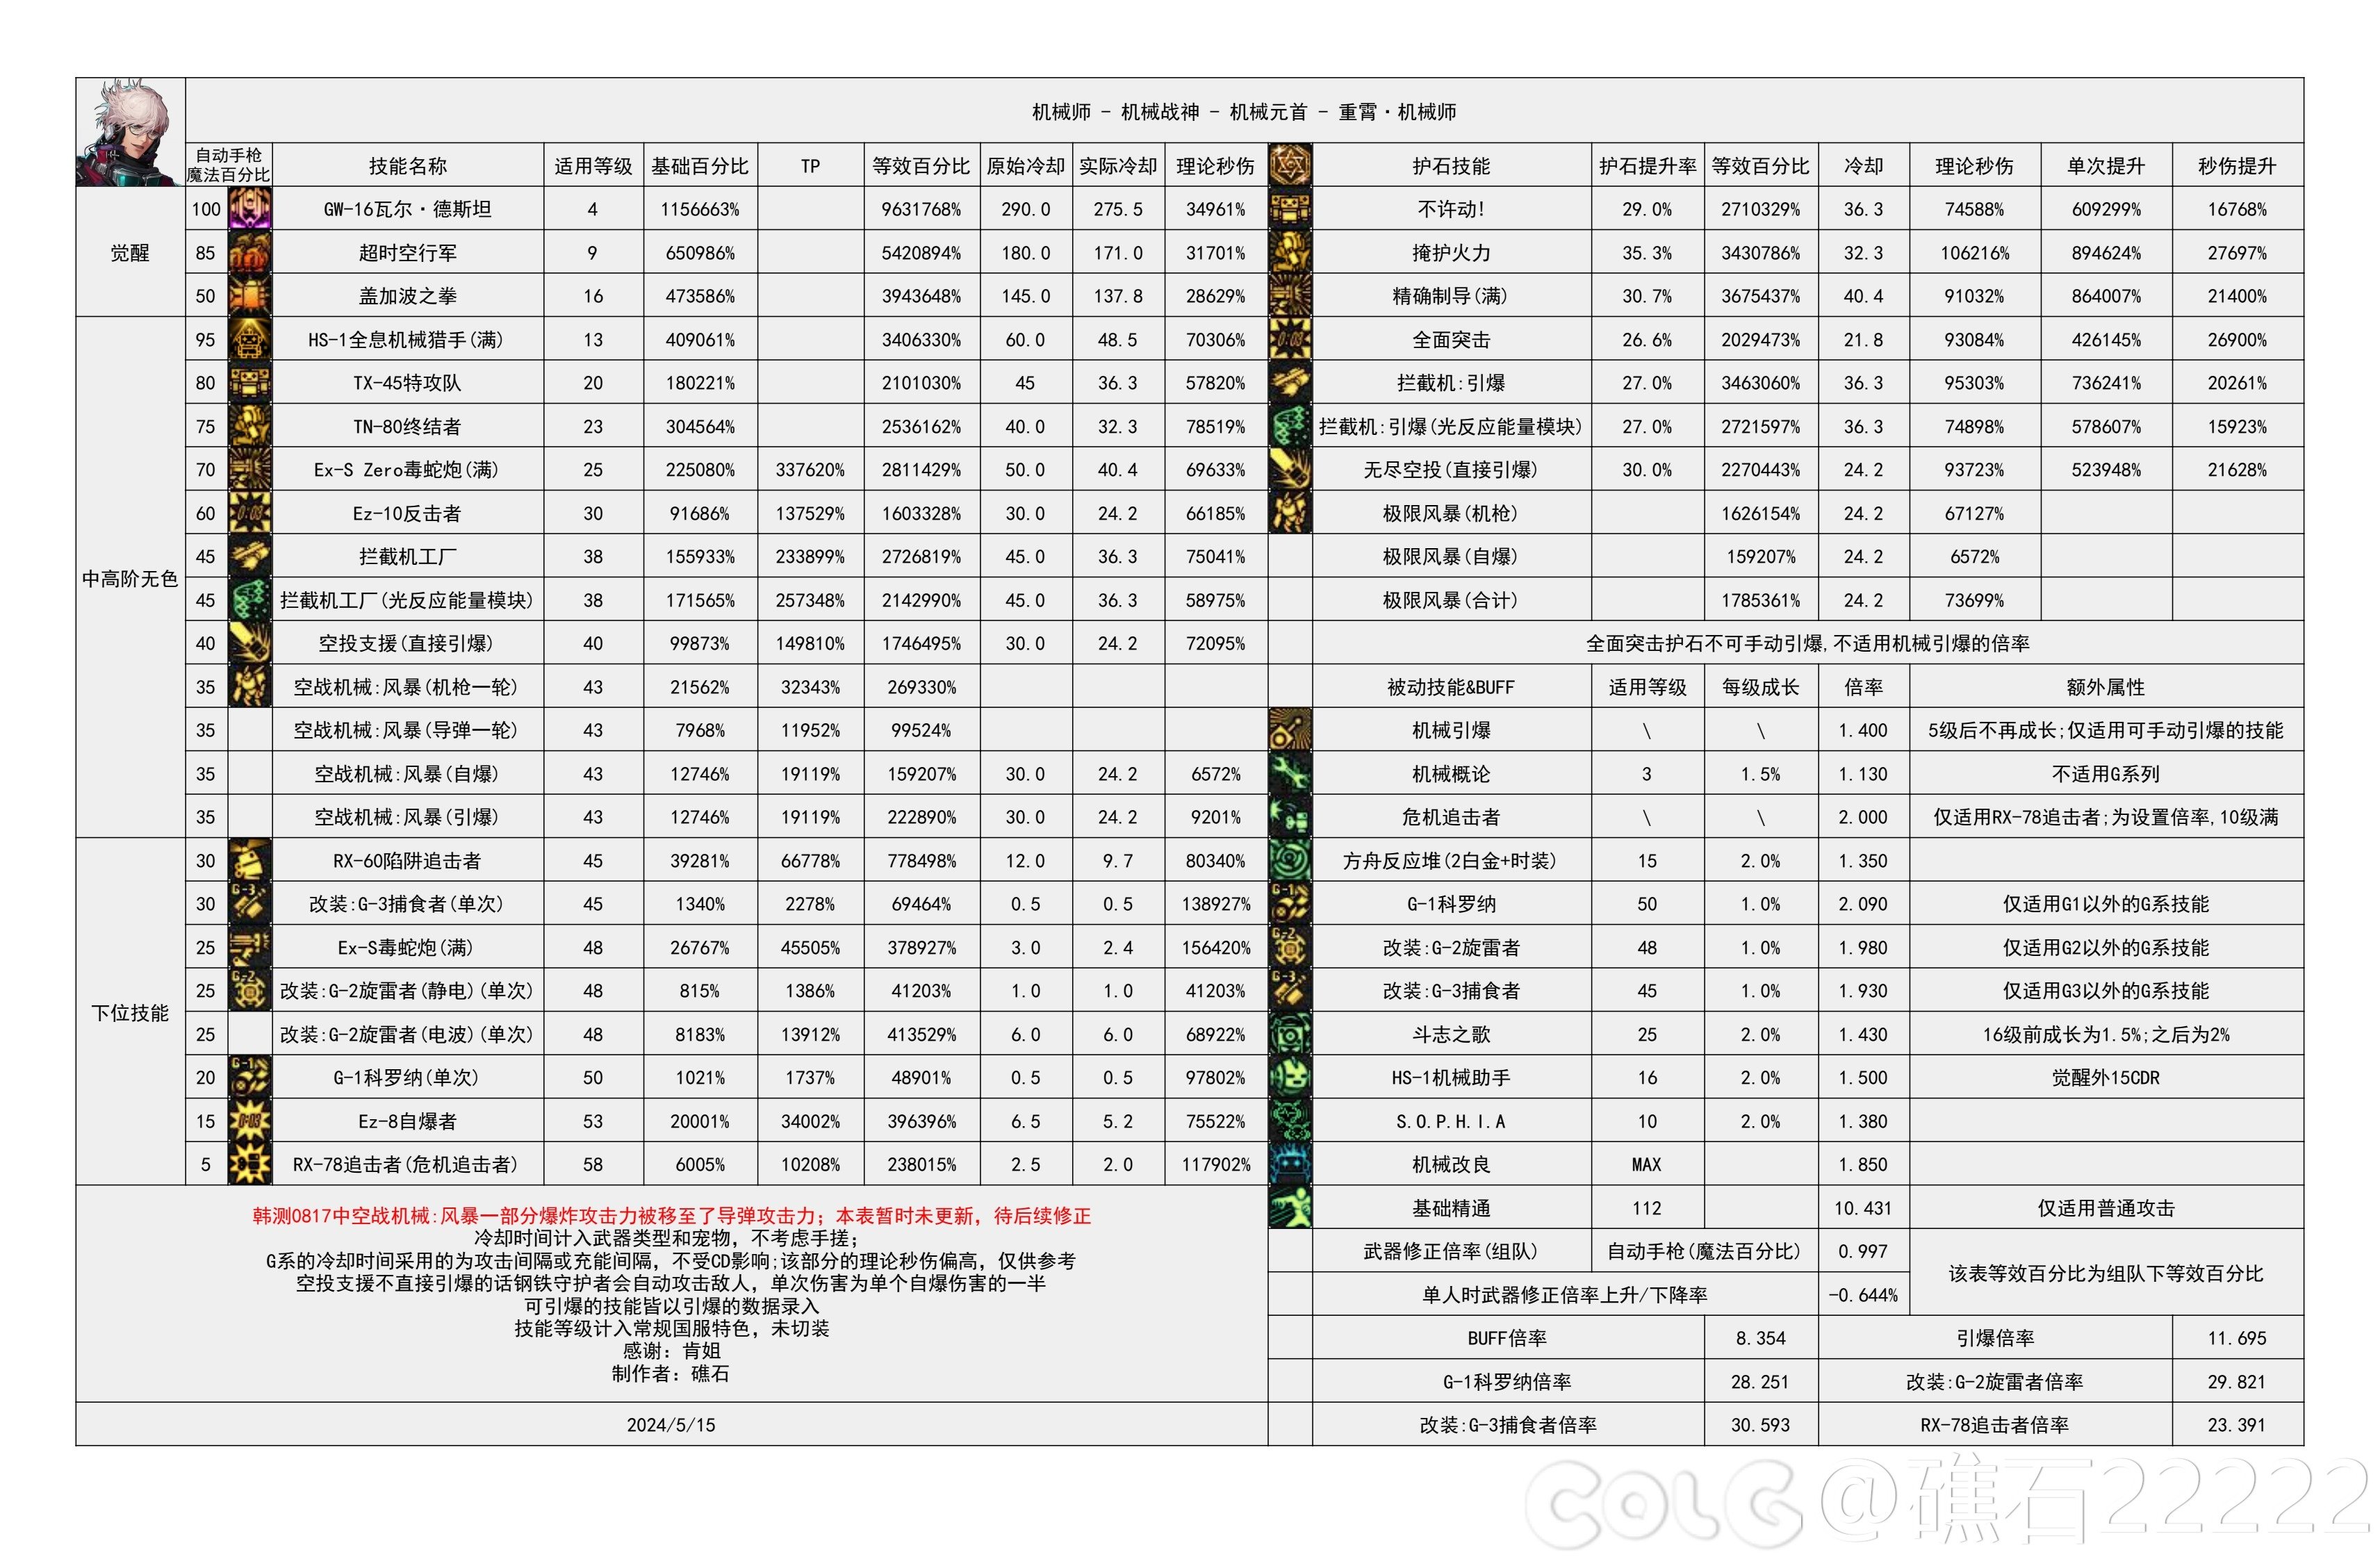 【国服现状】110版本输出职业数据表(国正5.15)(最新)30